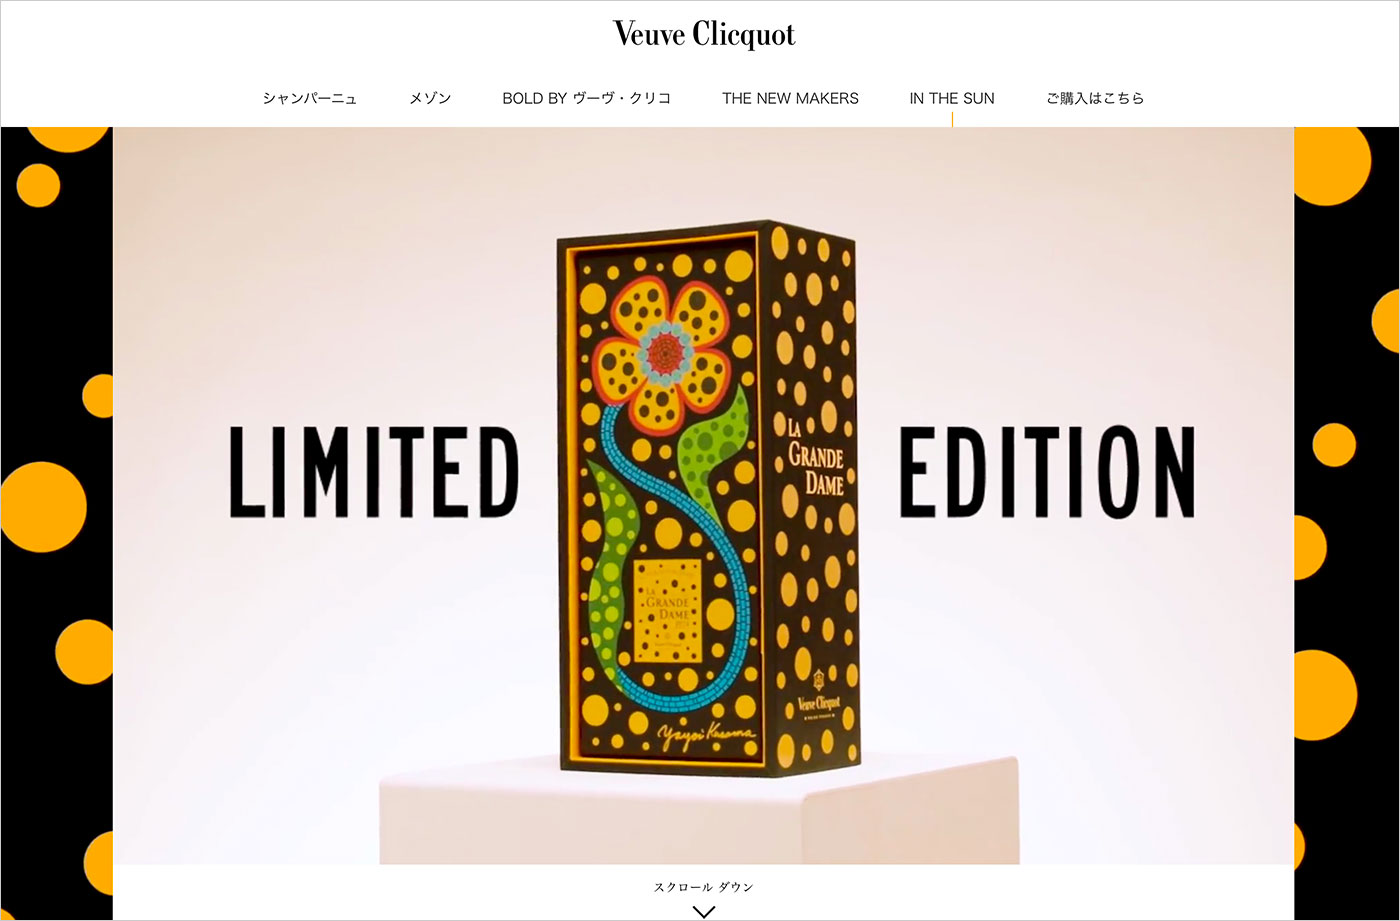 ヴーヴ・クリコ ラ・グランダムx草間彌生 | Veuve Clicquotウェブサイトの画面キャプチャ画像